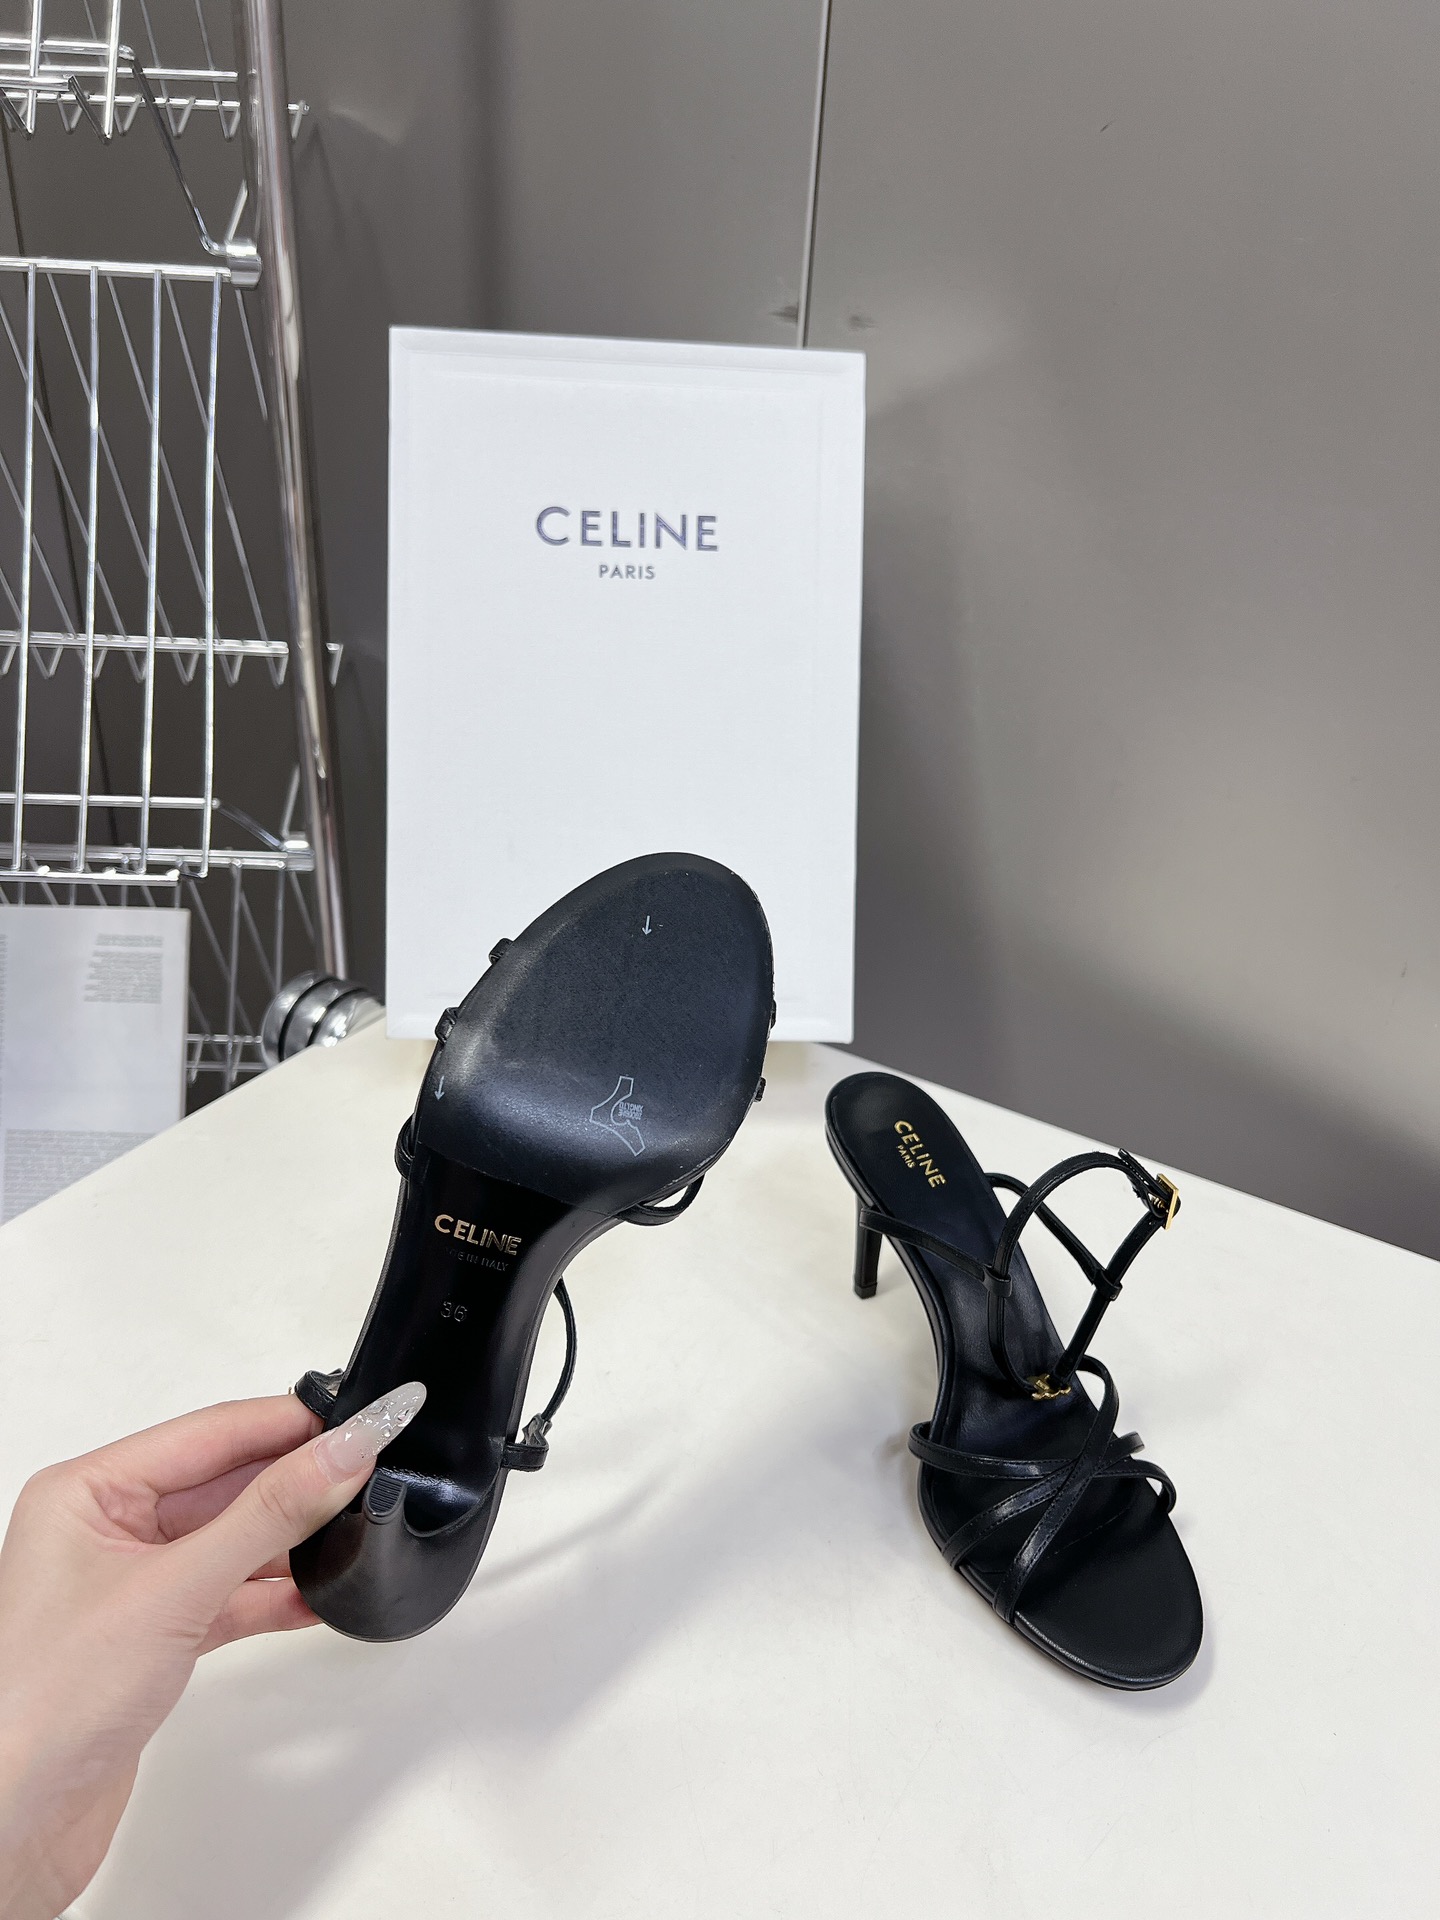 Celine思琳春夏凯旋门时装鞋柔美的露脚设计脚踝绑带上脚真的超级显瘦超级美C家特定的精致凯旋门logo